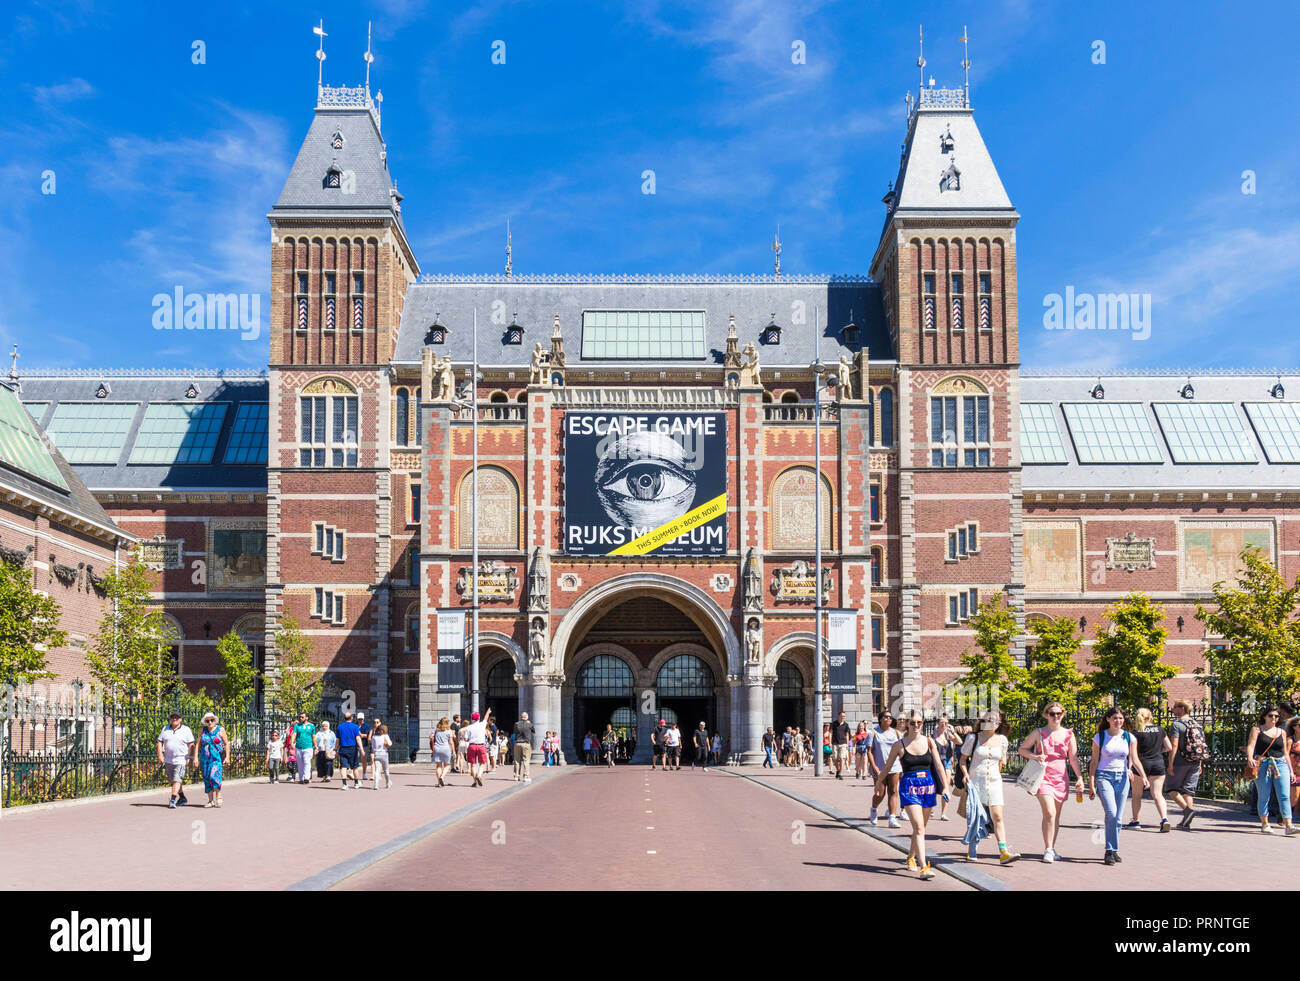 Rijksmuseum Amsterdam Amsterdam 19e siècle de la construction de maisons, la peinture hollandaise et chefs-d'une vaste collection d'art européen Hollande Pays-Bas Banque D'Images